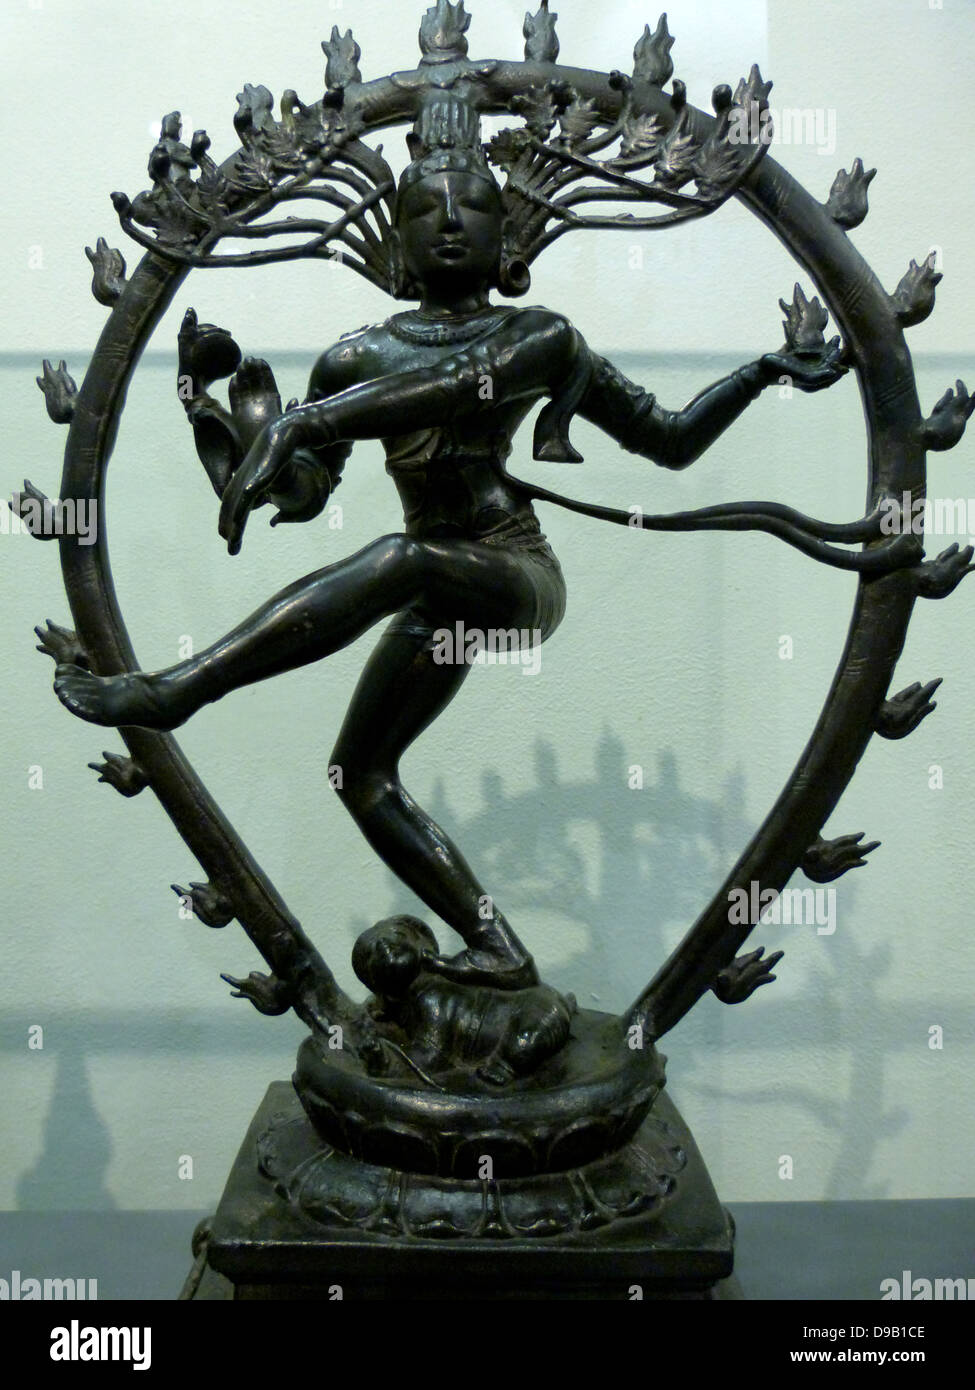 Shiva Nataraja, Signore della danza (900-50). Lega di rame. India meridionale. Fine Pallava/early Chola periodo. Shiva contiene il tamburo, associato con il suono e l'energia, nella sua parte superiore lato destro la fiamma nella sua parte superiore lato sinistro, bilanciando il suo ruolo di creatore e distruttore. Il suo destro inferiore in abhaya mudra offre rassicurazione, mentre il suo angolo inferiore sinistro suggerisce di salvezza attraverso il culto. Egli calpesta Apasmara, il demone di ignoranza. Foto Stock